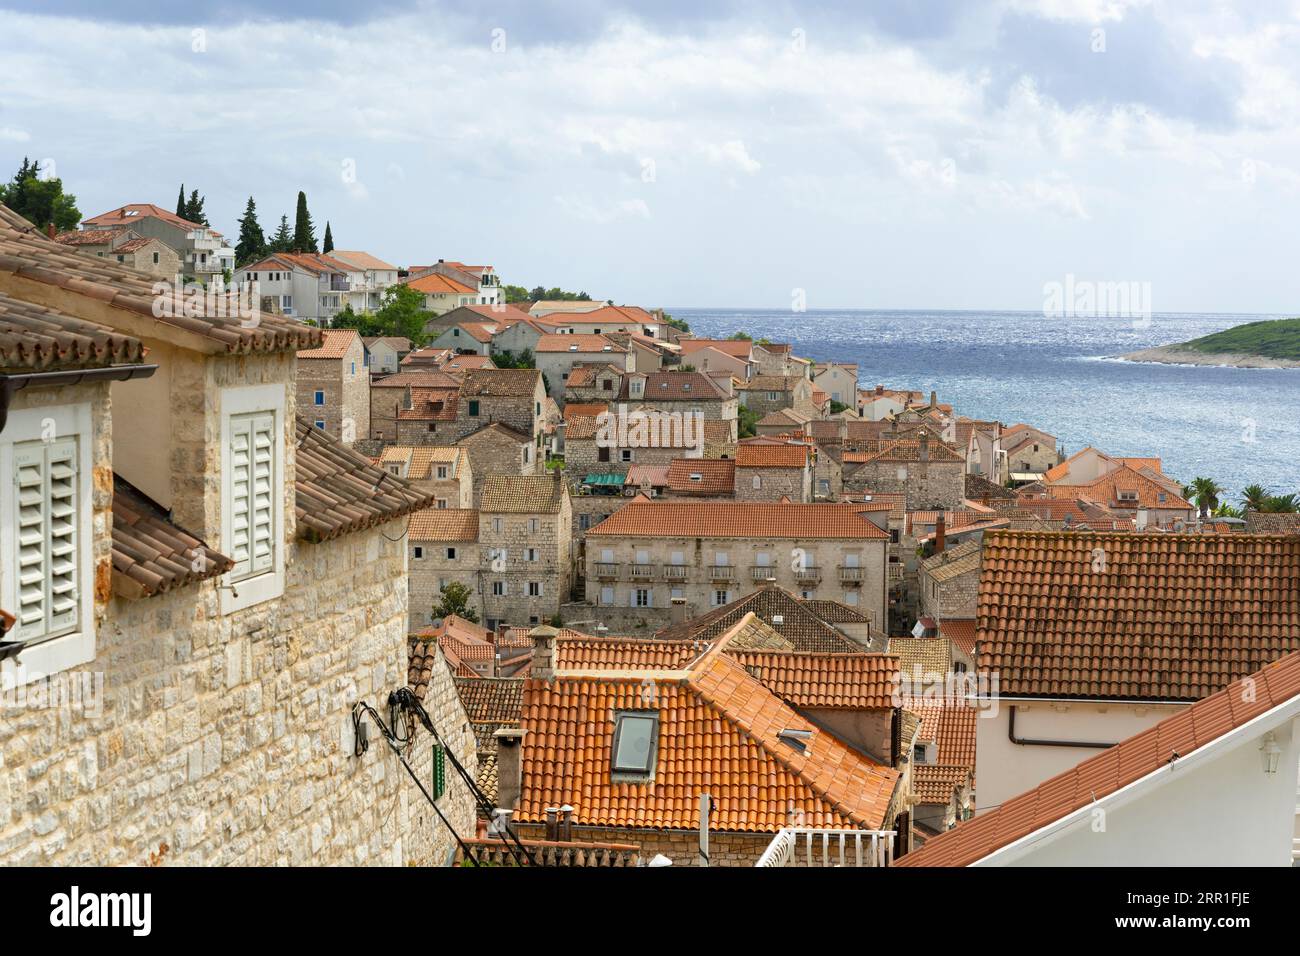 Croazia, isola di Hvar, vista sul tetto del porto, tetti piastrellati della città vecchia dal Bistro Pizzeria Mizarola, terrazza sul mare Adriatico Foto Stock